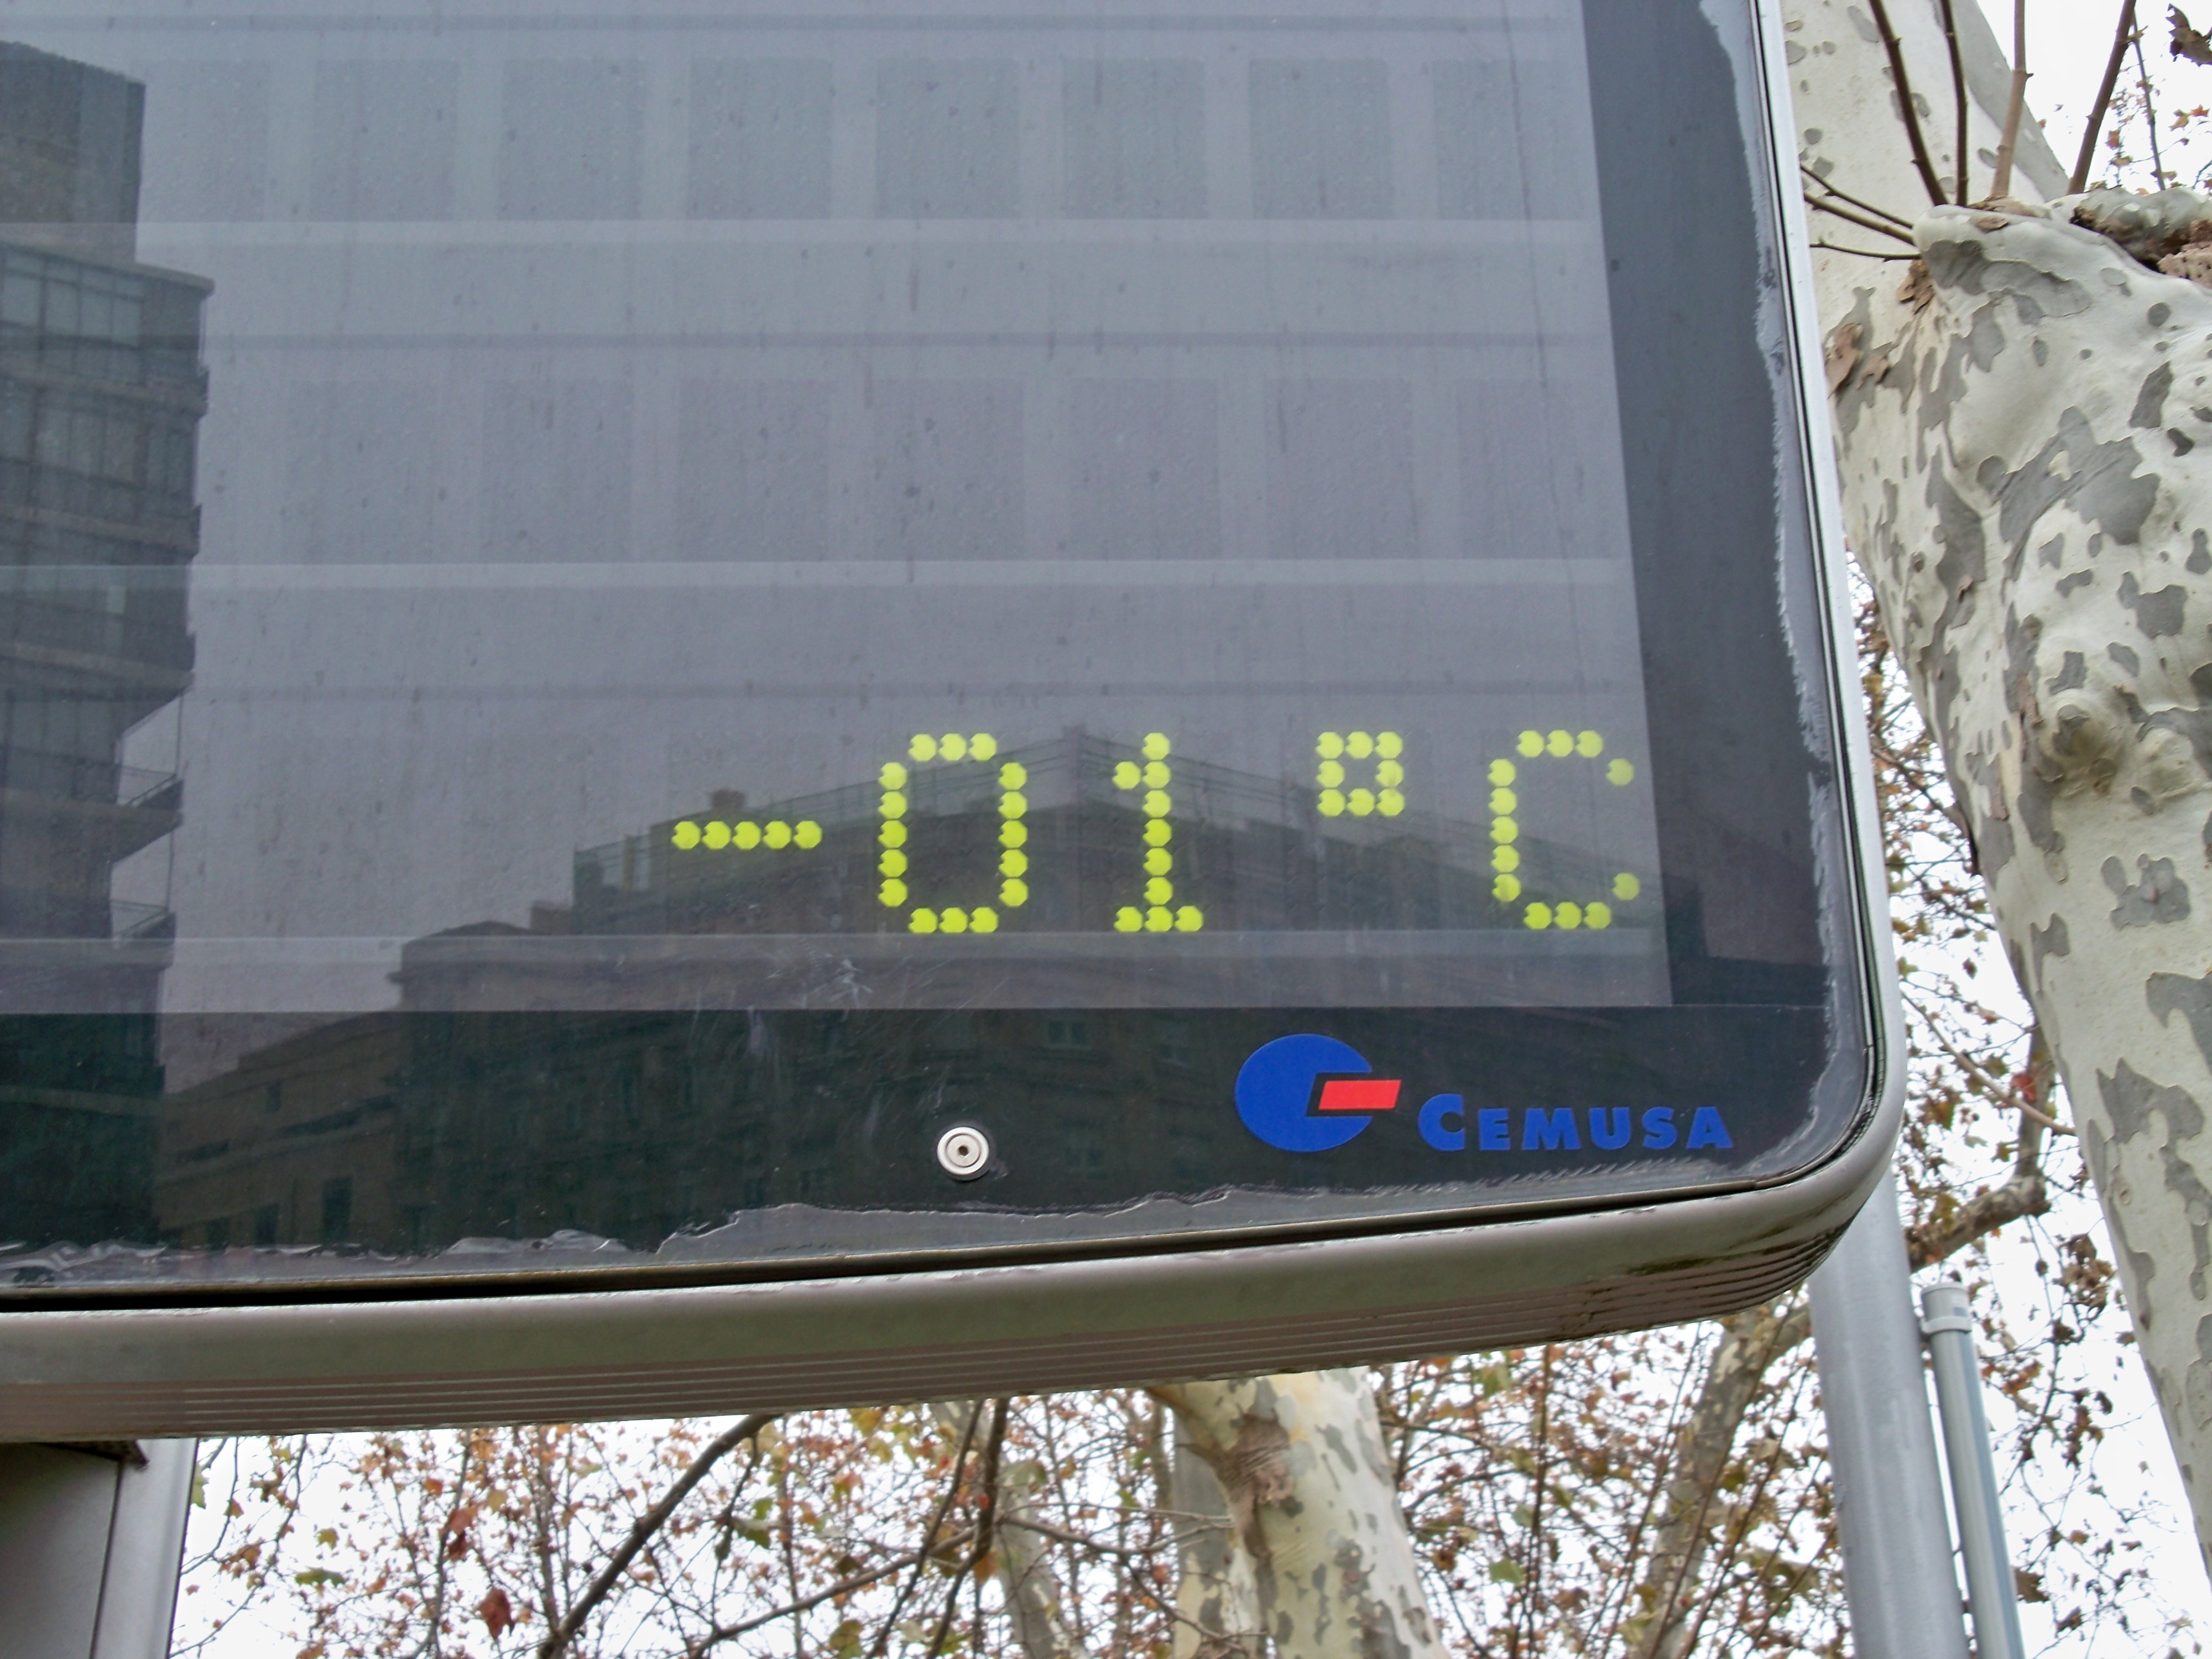 Continúa la bajada de temperaturas este domingo, donde el termómetro estará bajo cero en C-LM